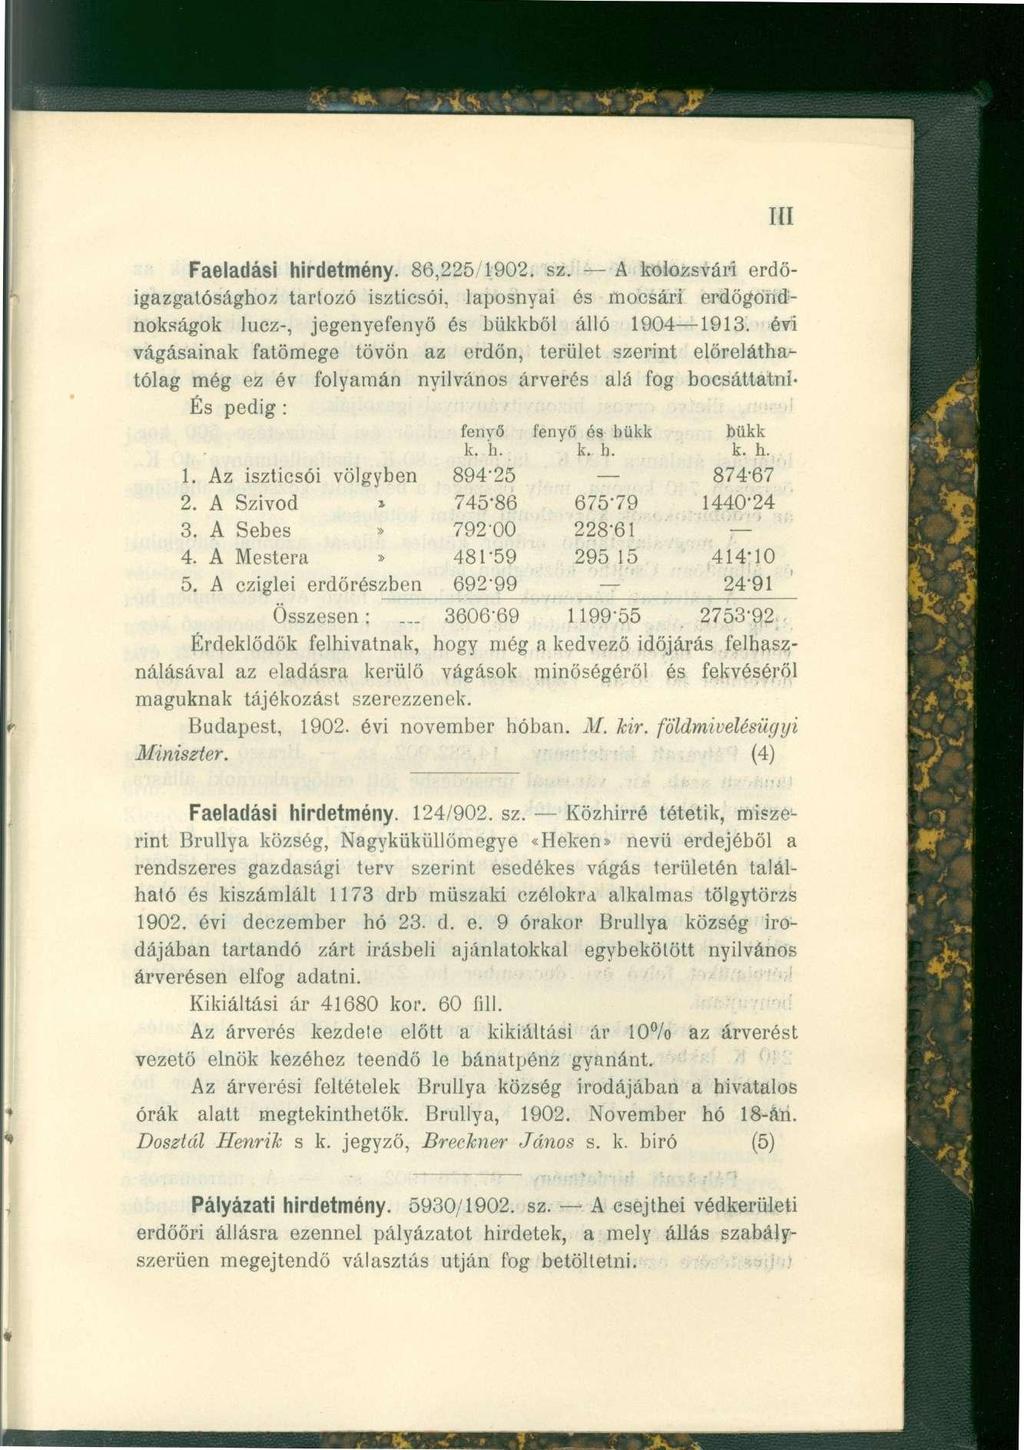 III Faeladási hirdetmény. 86,225,1902. sz. A kolozsvári erdőigazgatósághoz tartozó iszticsói, laposnyai és mocsári erdőgondnokságok lucz-, jegenyefenyő és bükkből álló 1904 1913.